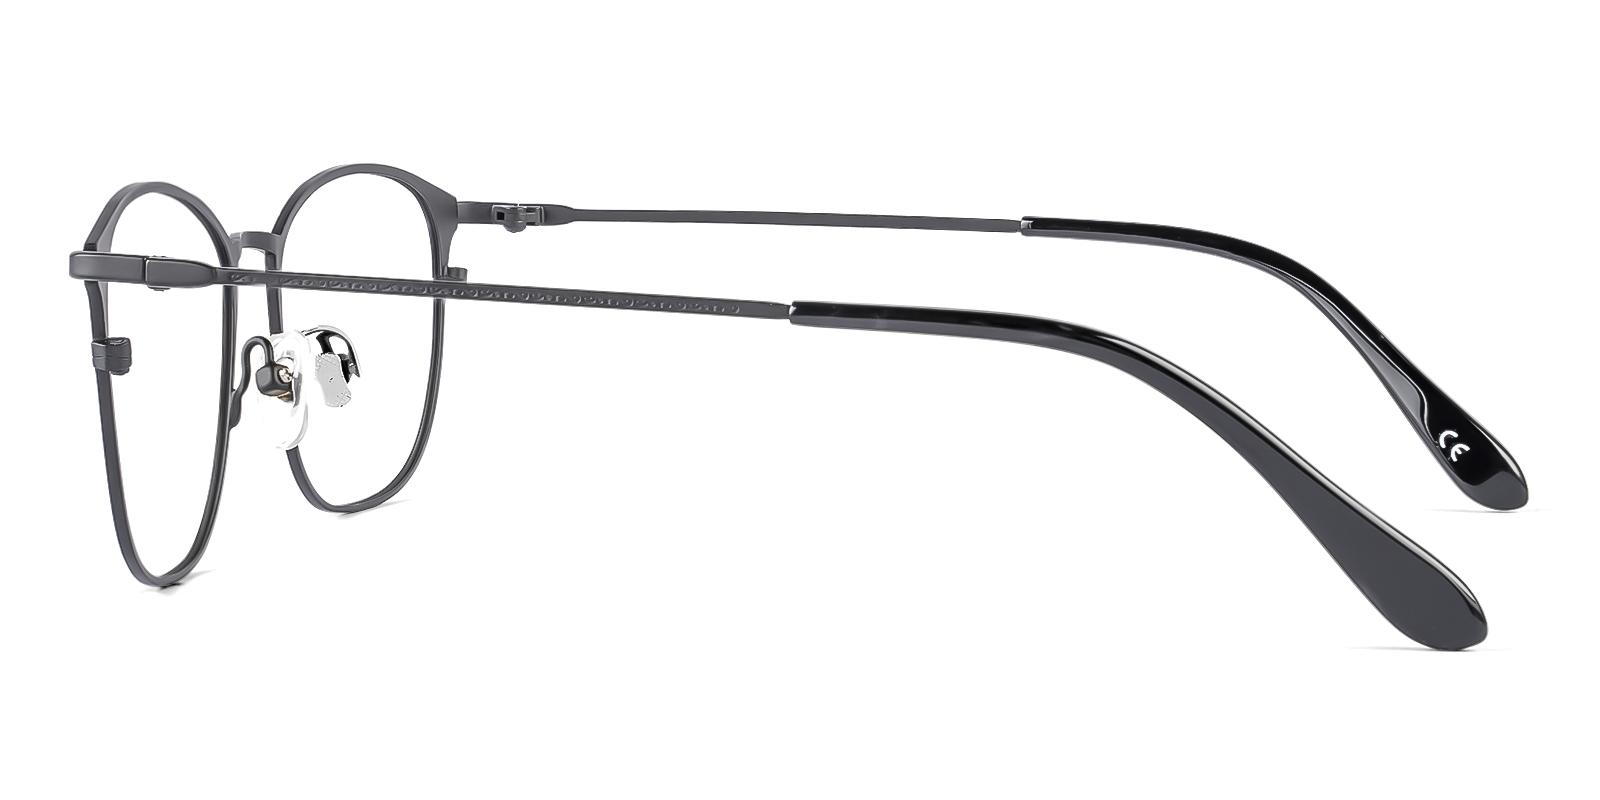 Nedal Black Metal Eyeglasses , NosePads Frames from ABBE Glasses